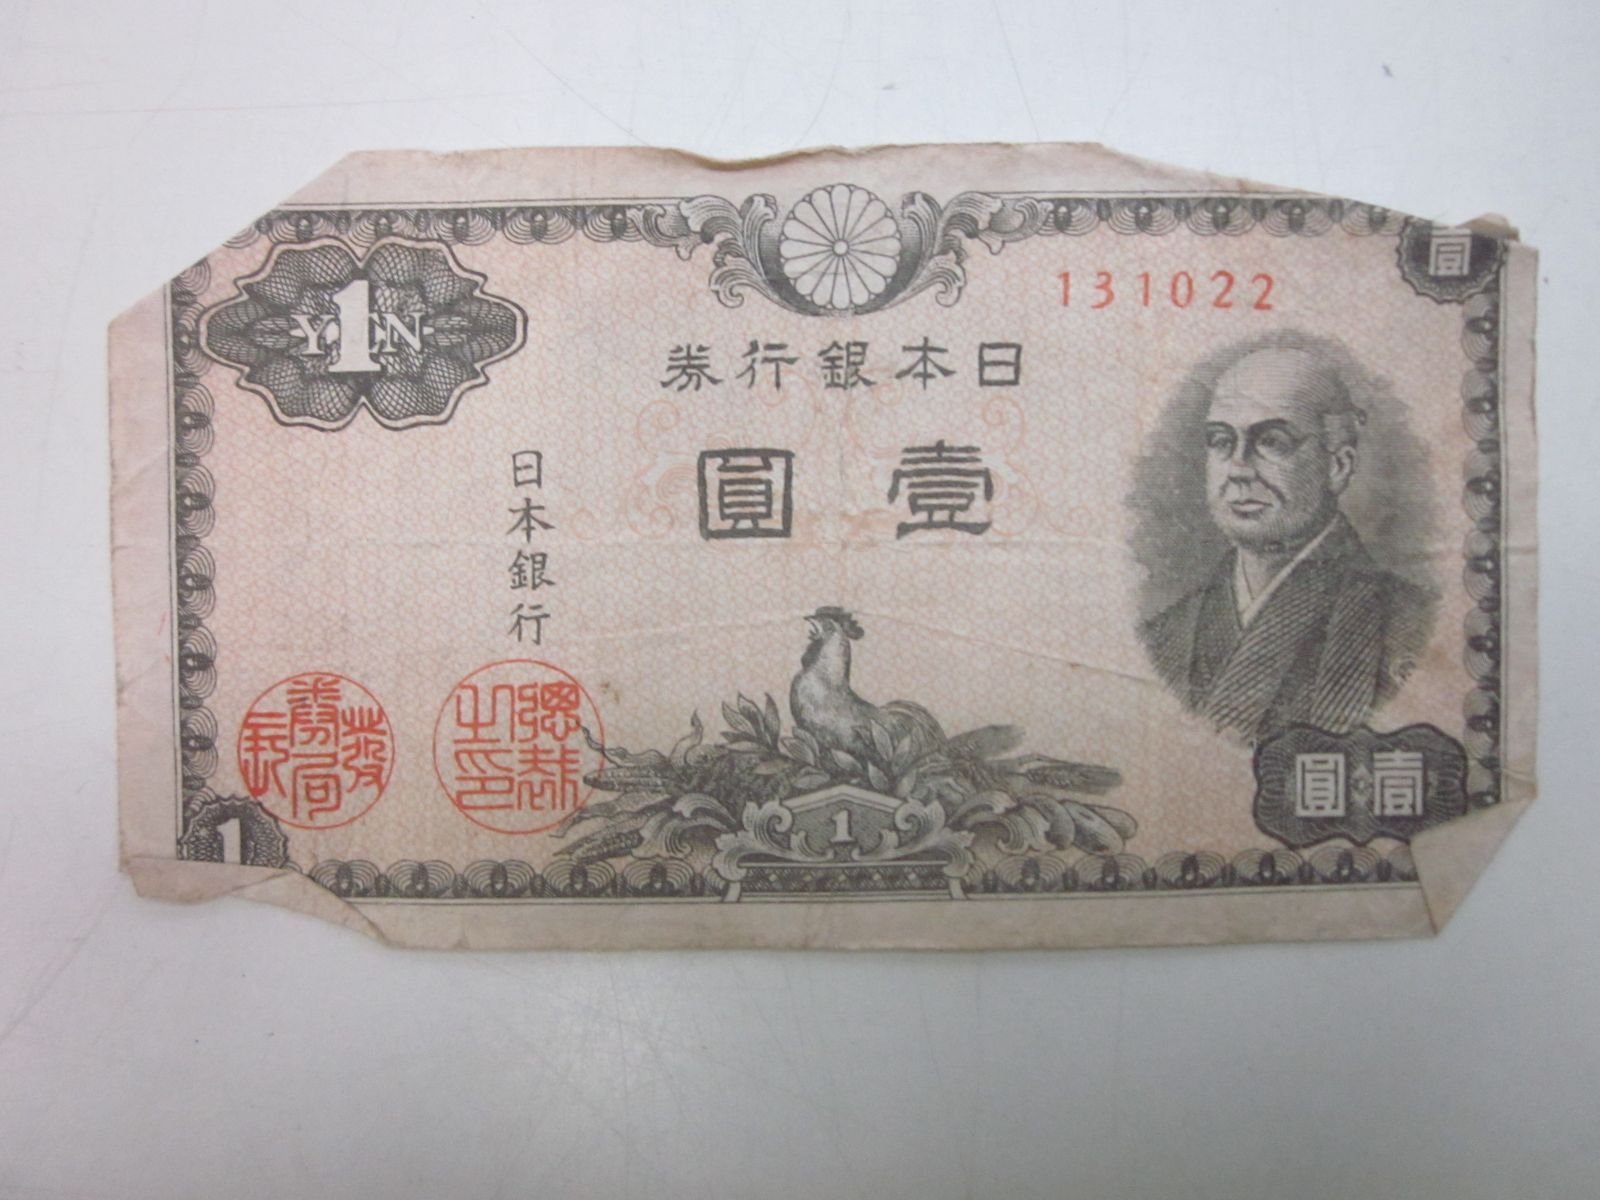 う6528た 旧紙幣 壹圓札 二宮尊徳 ニワトリ 彩紋 日本銀行券 一円札 